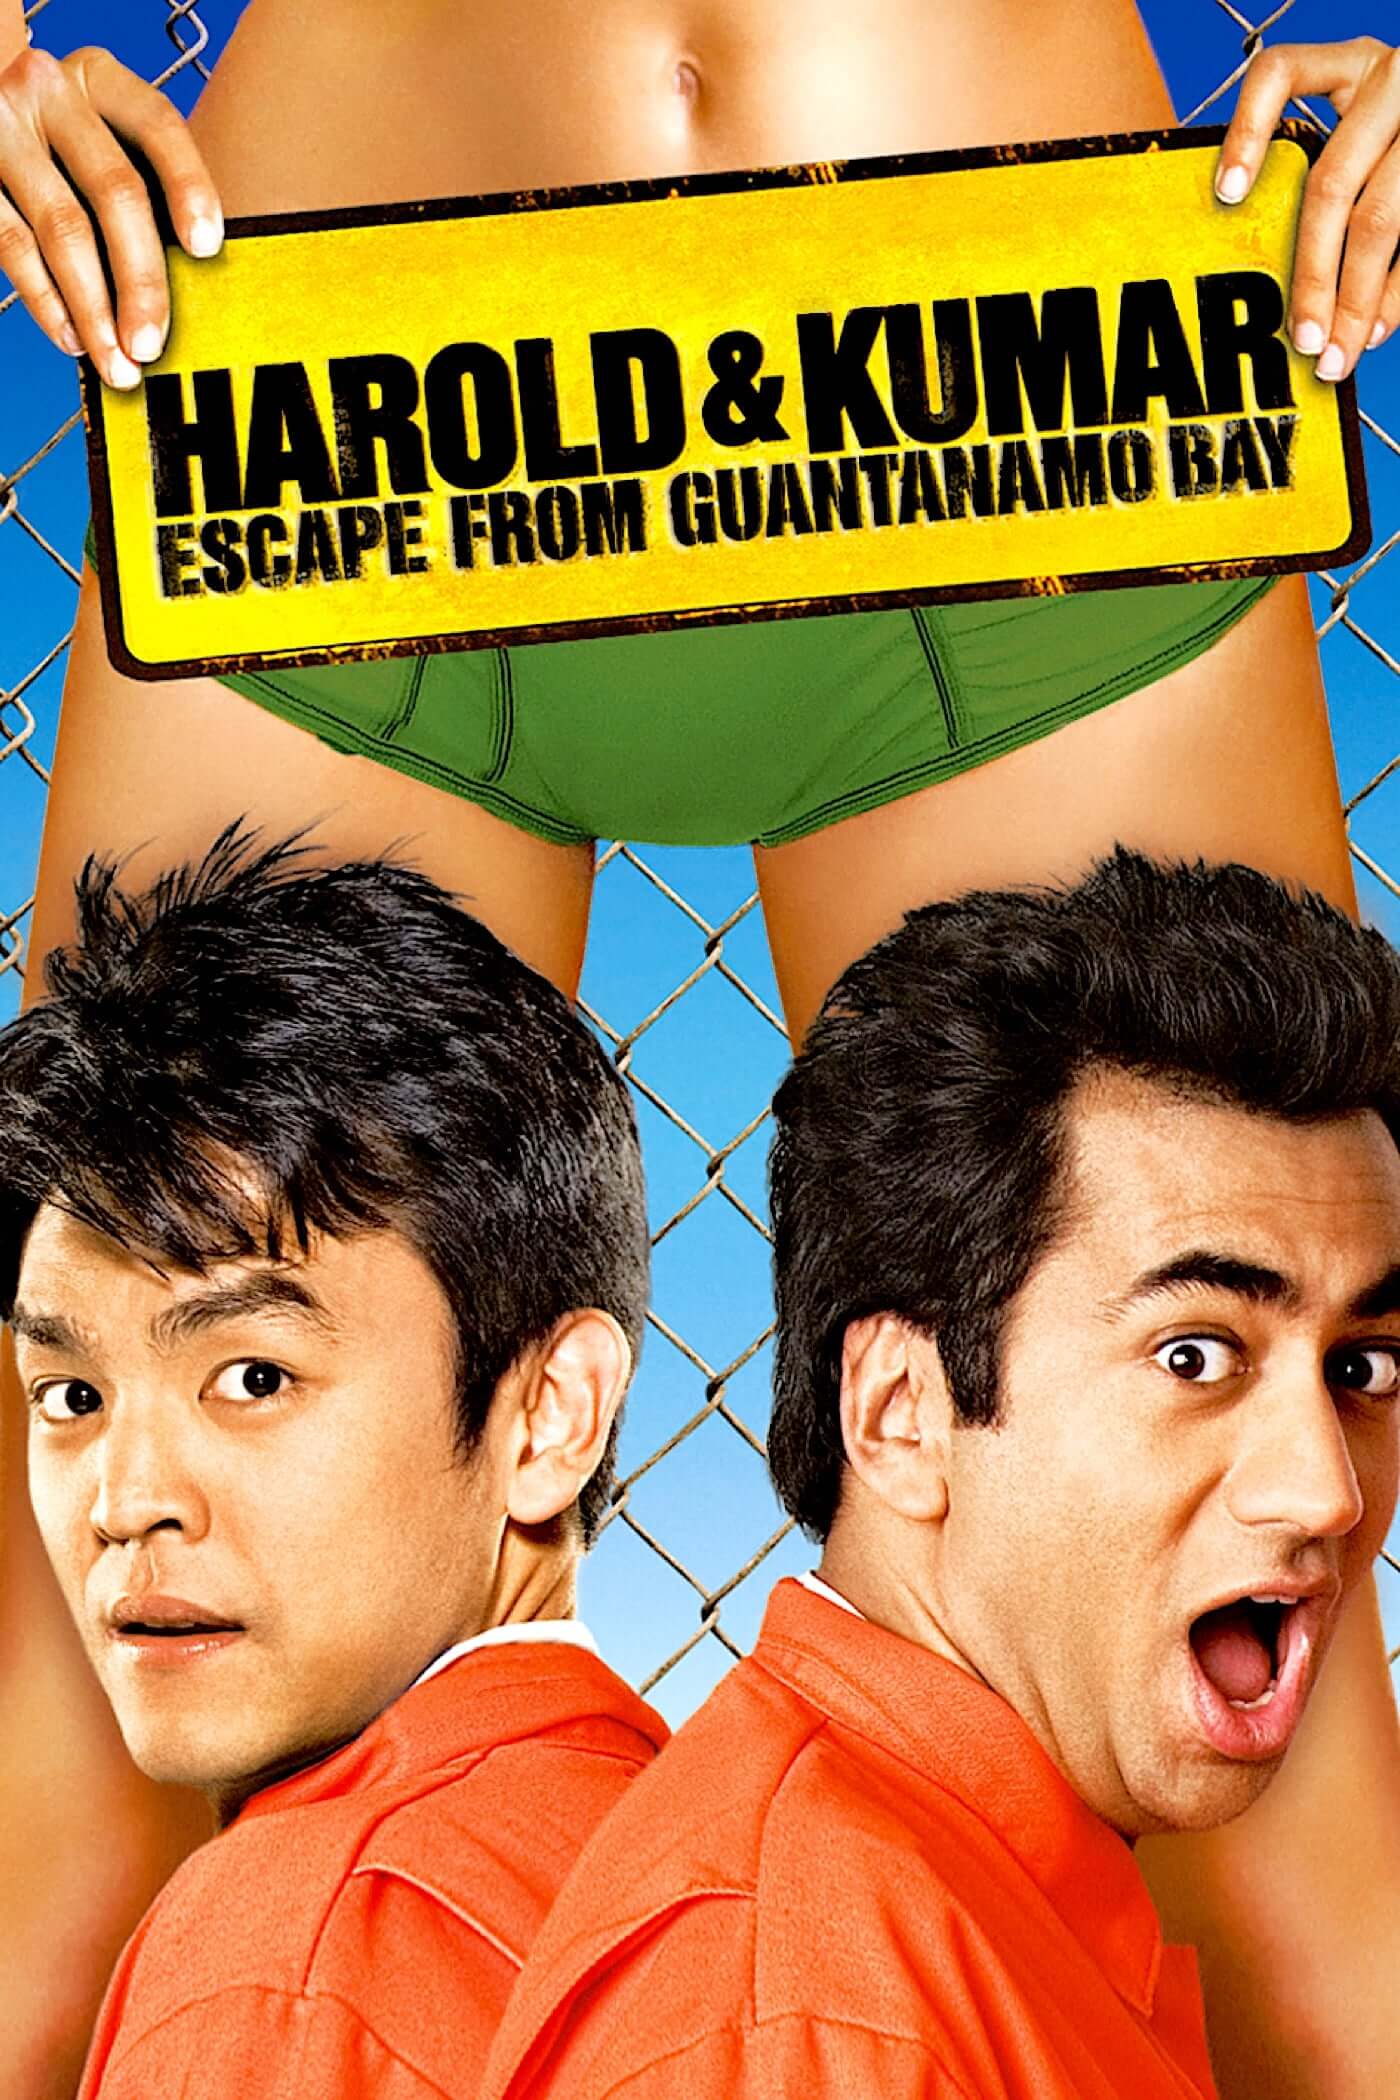 هارولد و کومار فرار از خلیج گوانتانامو (Harold & Kumar Escape from Guantanamo Bay)